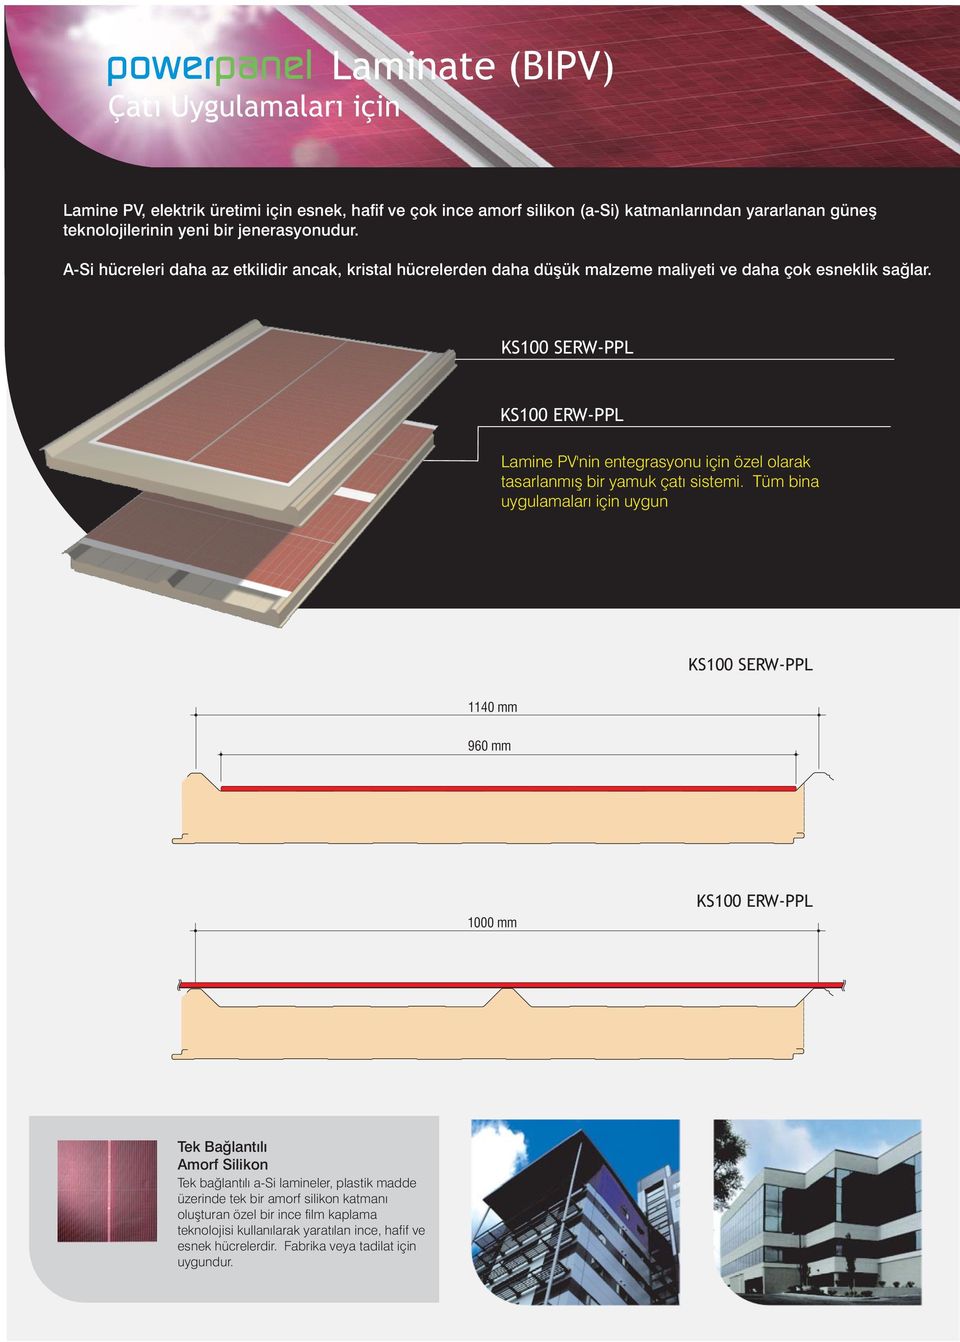 Lamine PV'nin entegrasyonu için özel olarak tasarlanmış bir yamuk çatı sistemi.